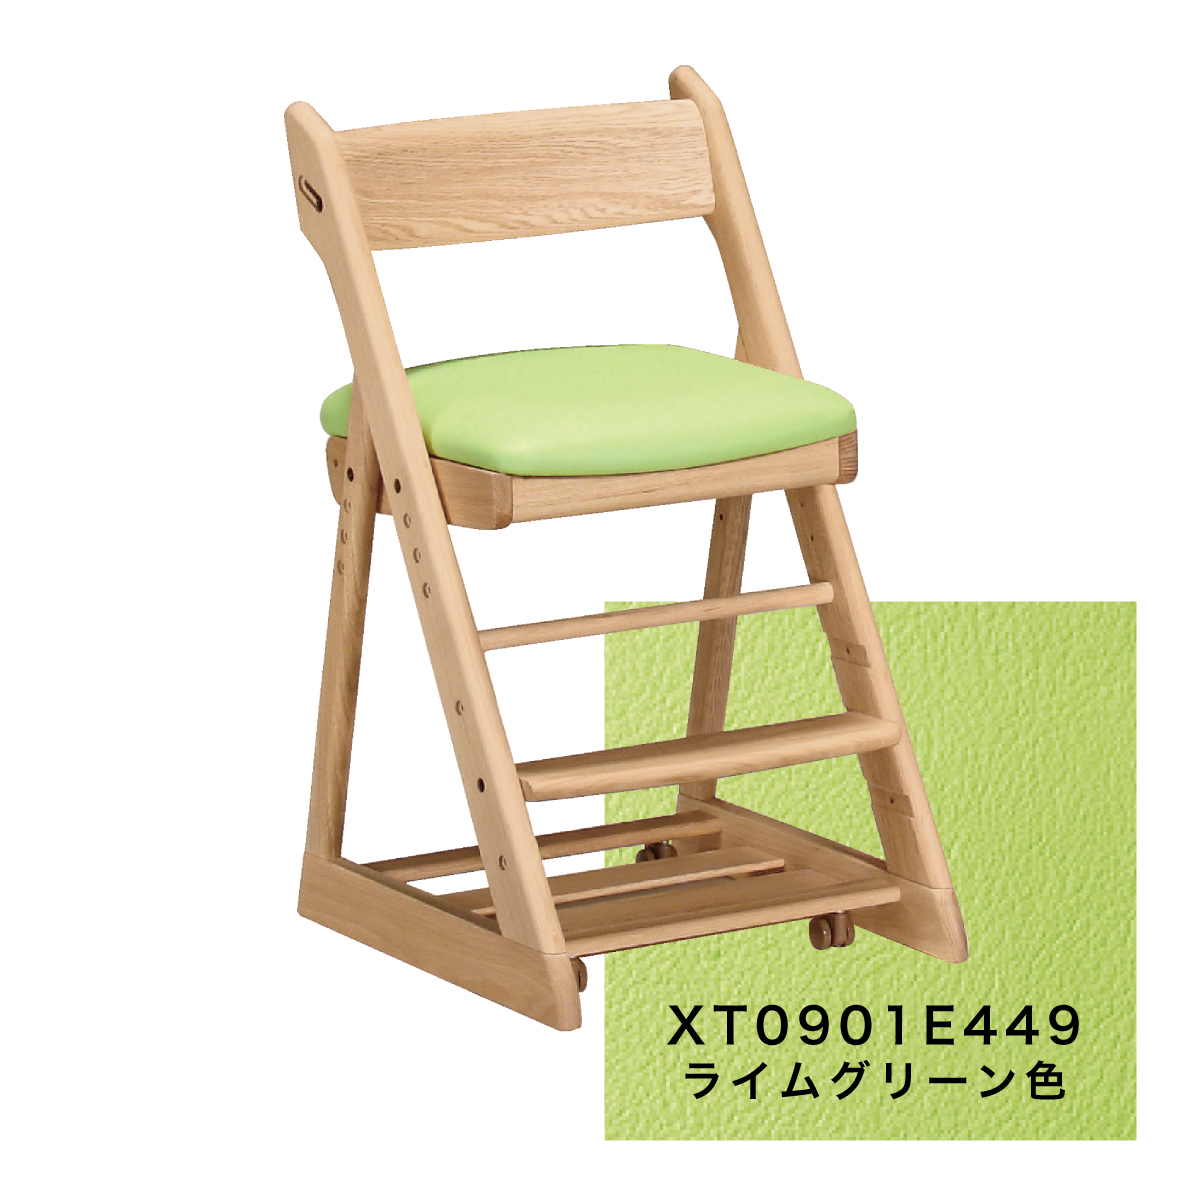 カリモク 学習椅子 おしゃれ XT0901 ピュアオーク色 オーク材 デスク